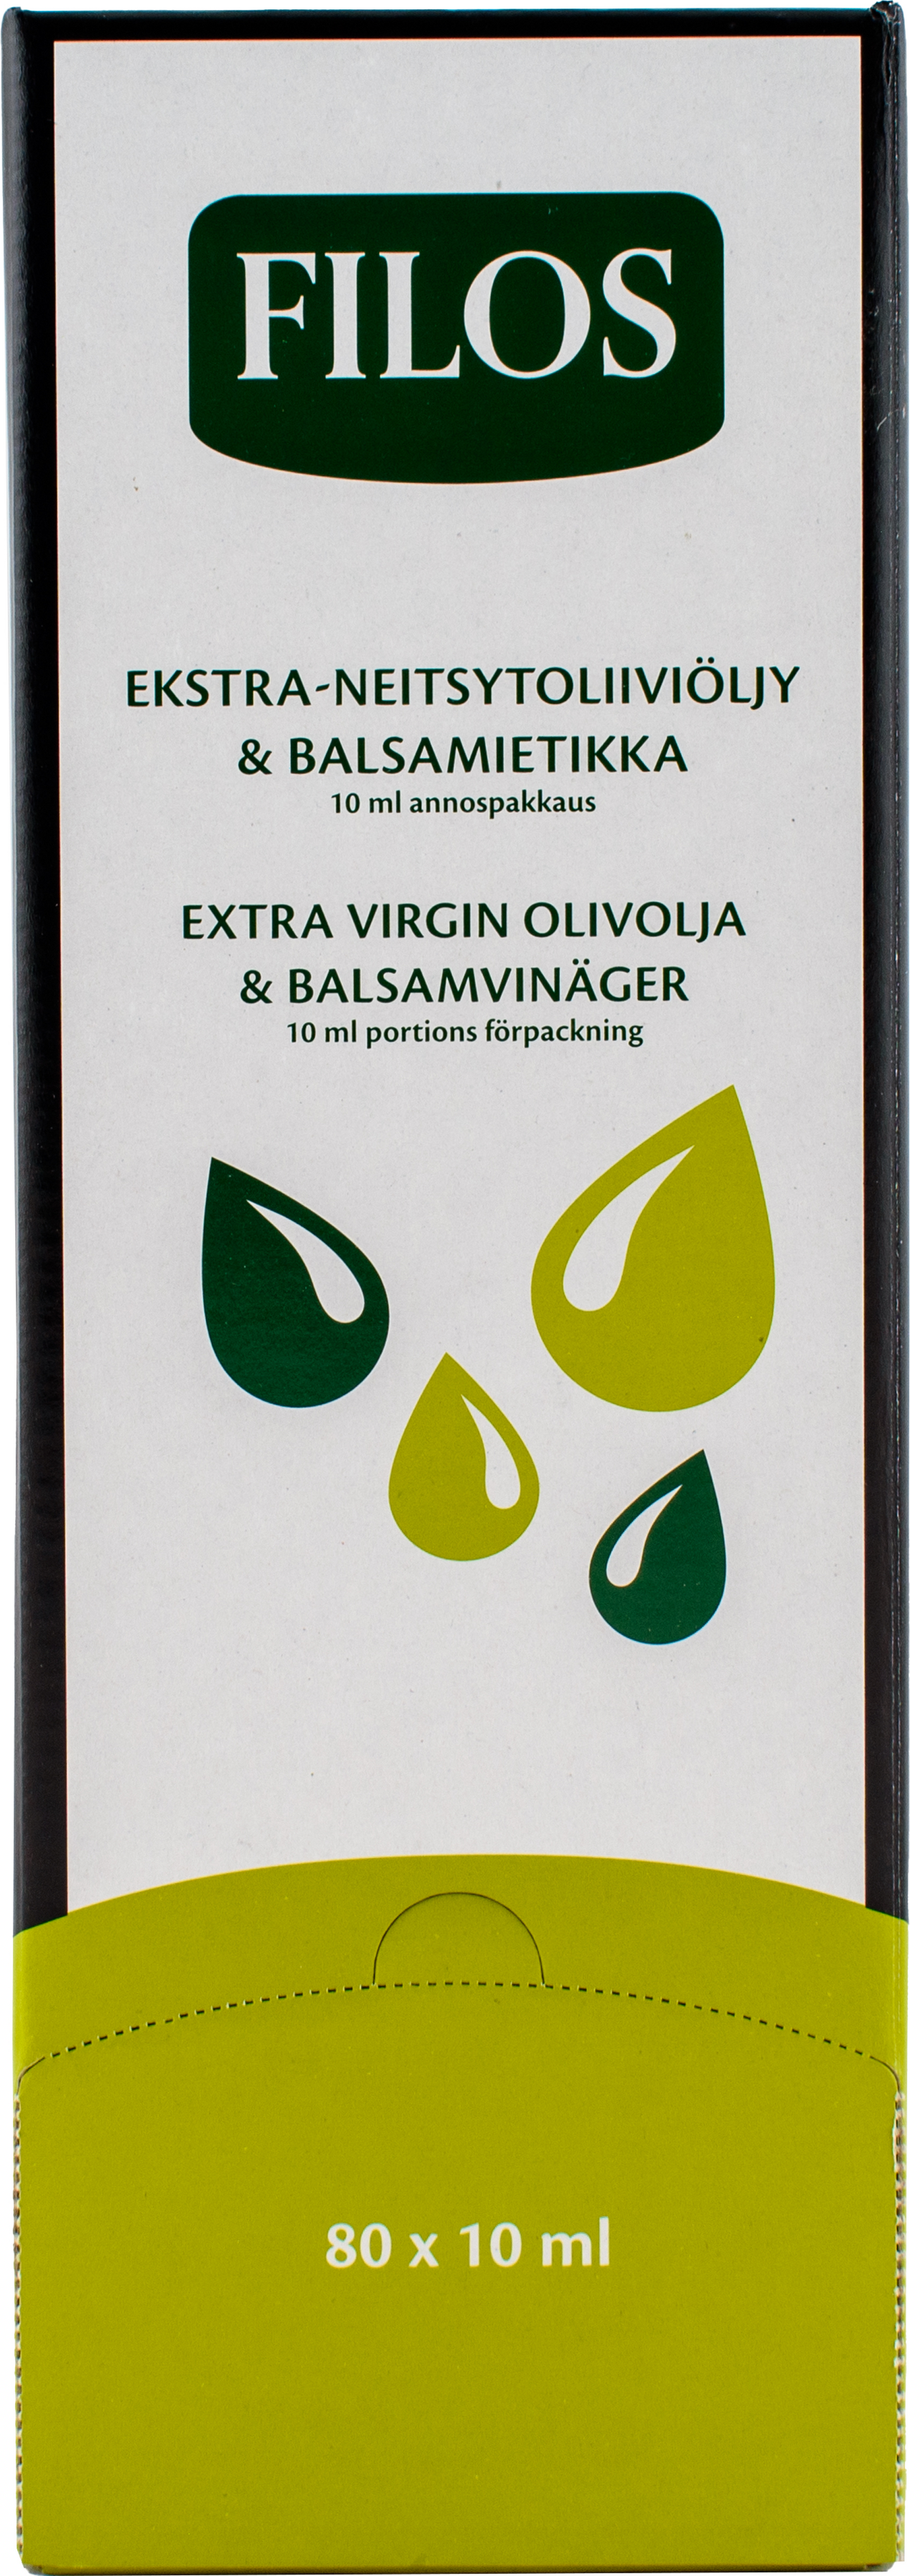 Filos oliiviöljy-balsamiviinetikka 10ml